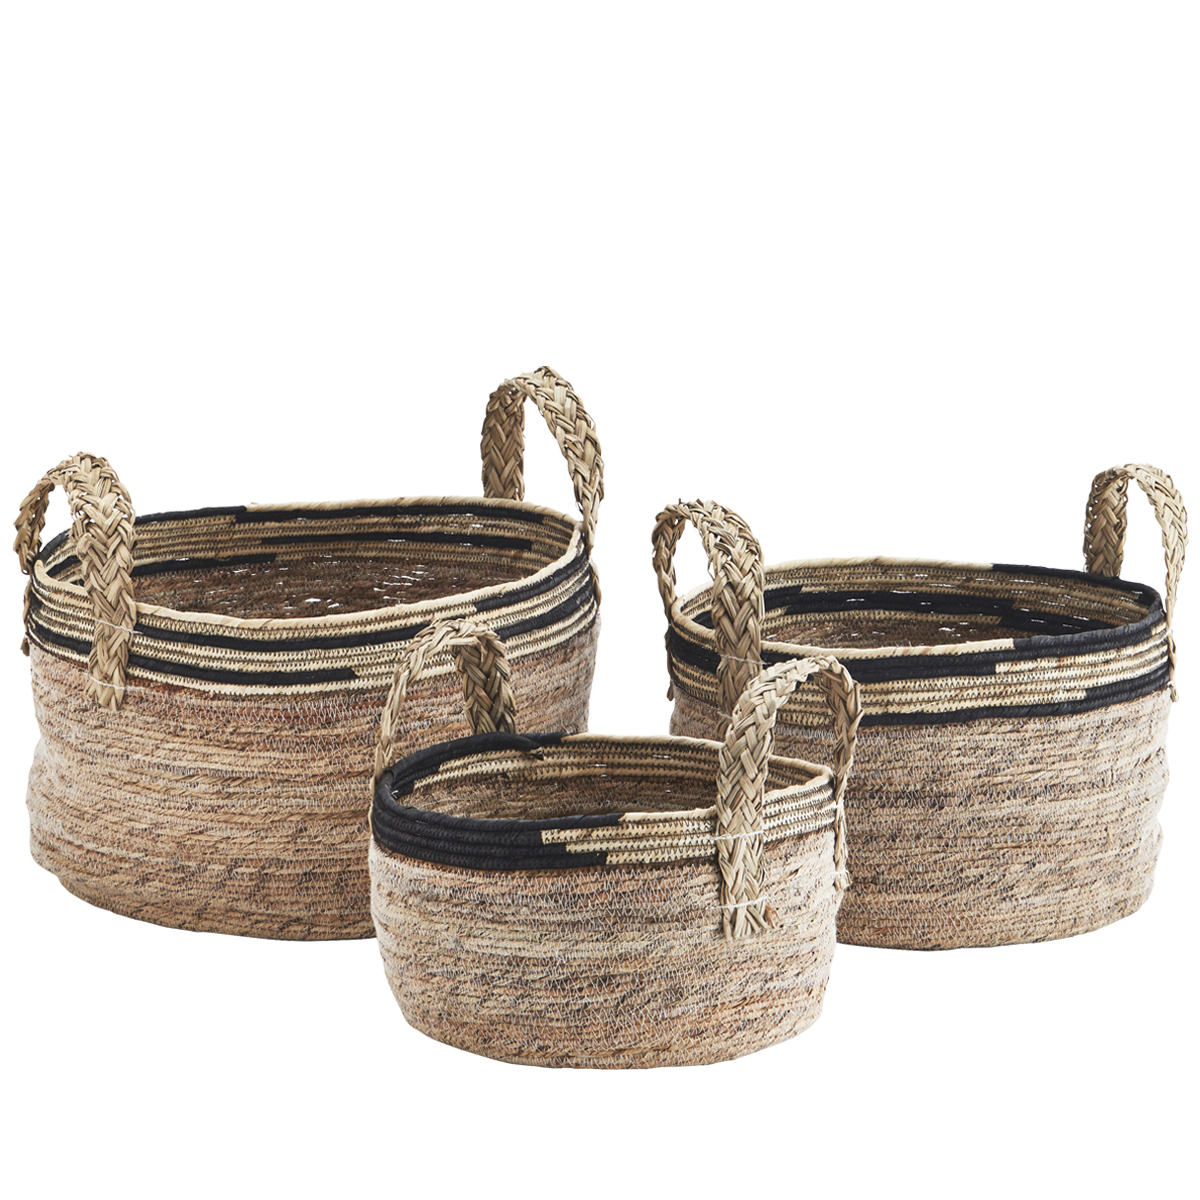 Seagrass baskets w/ handles